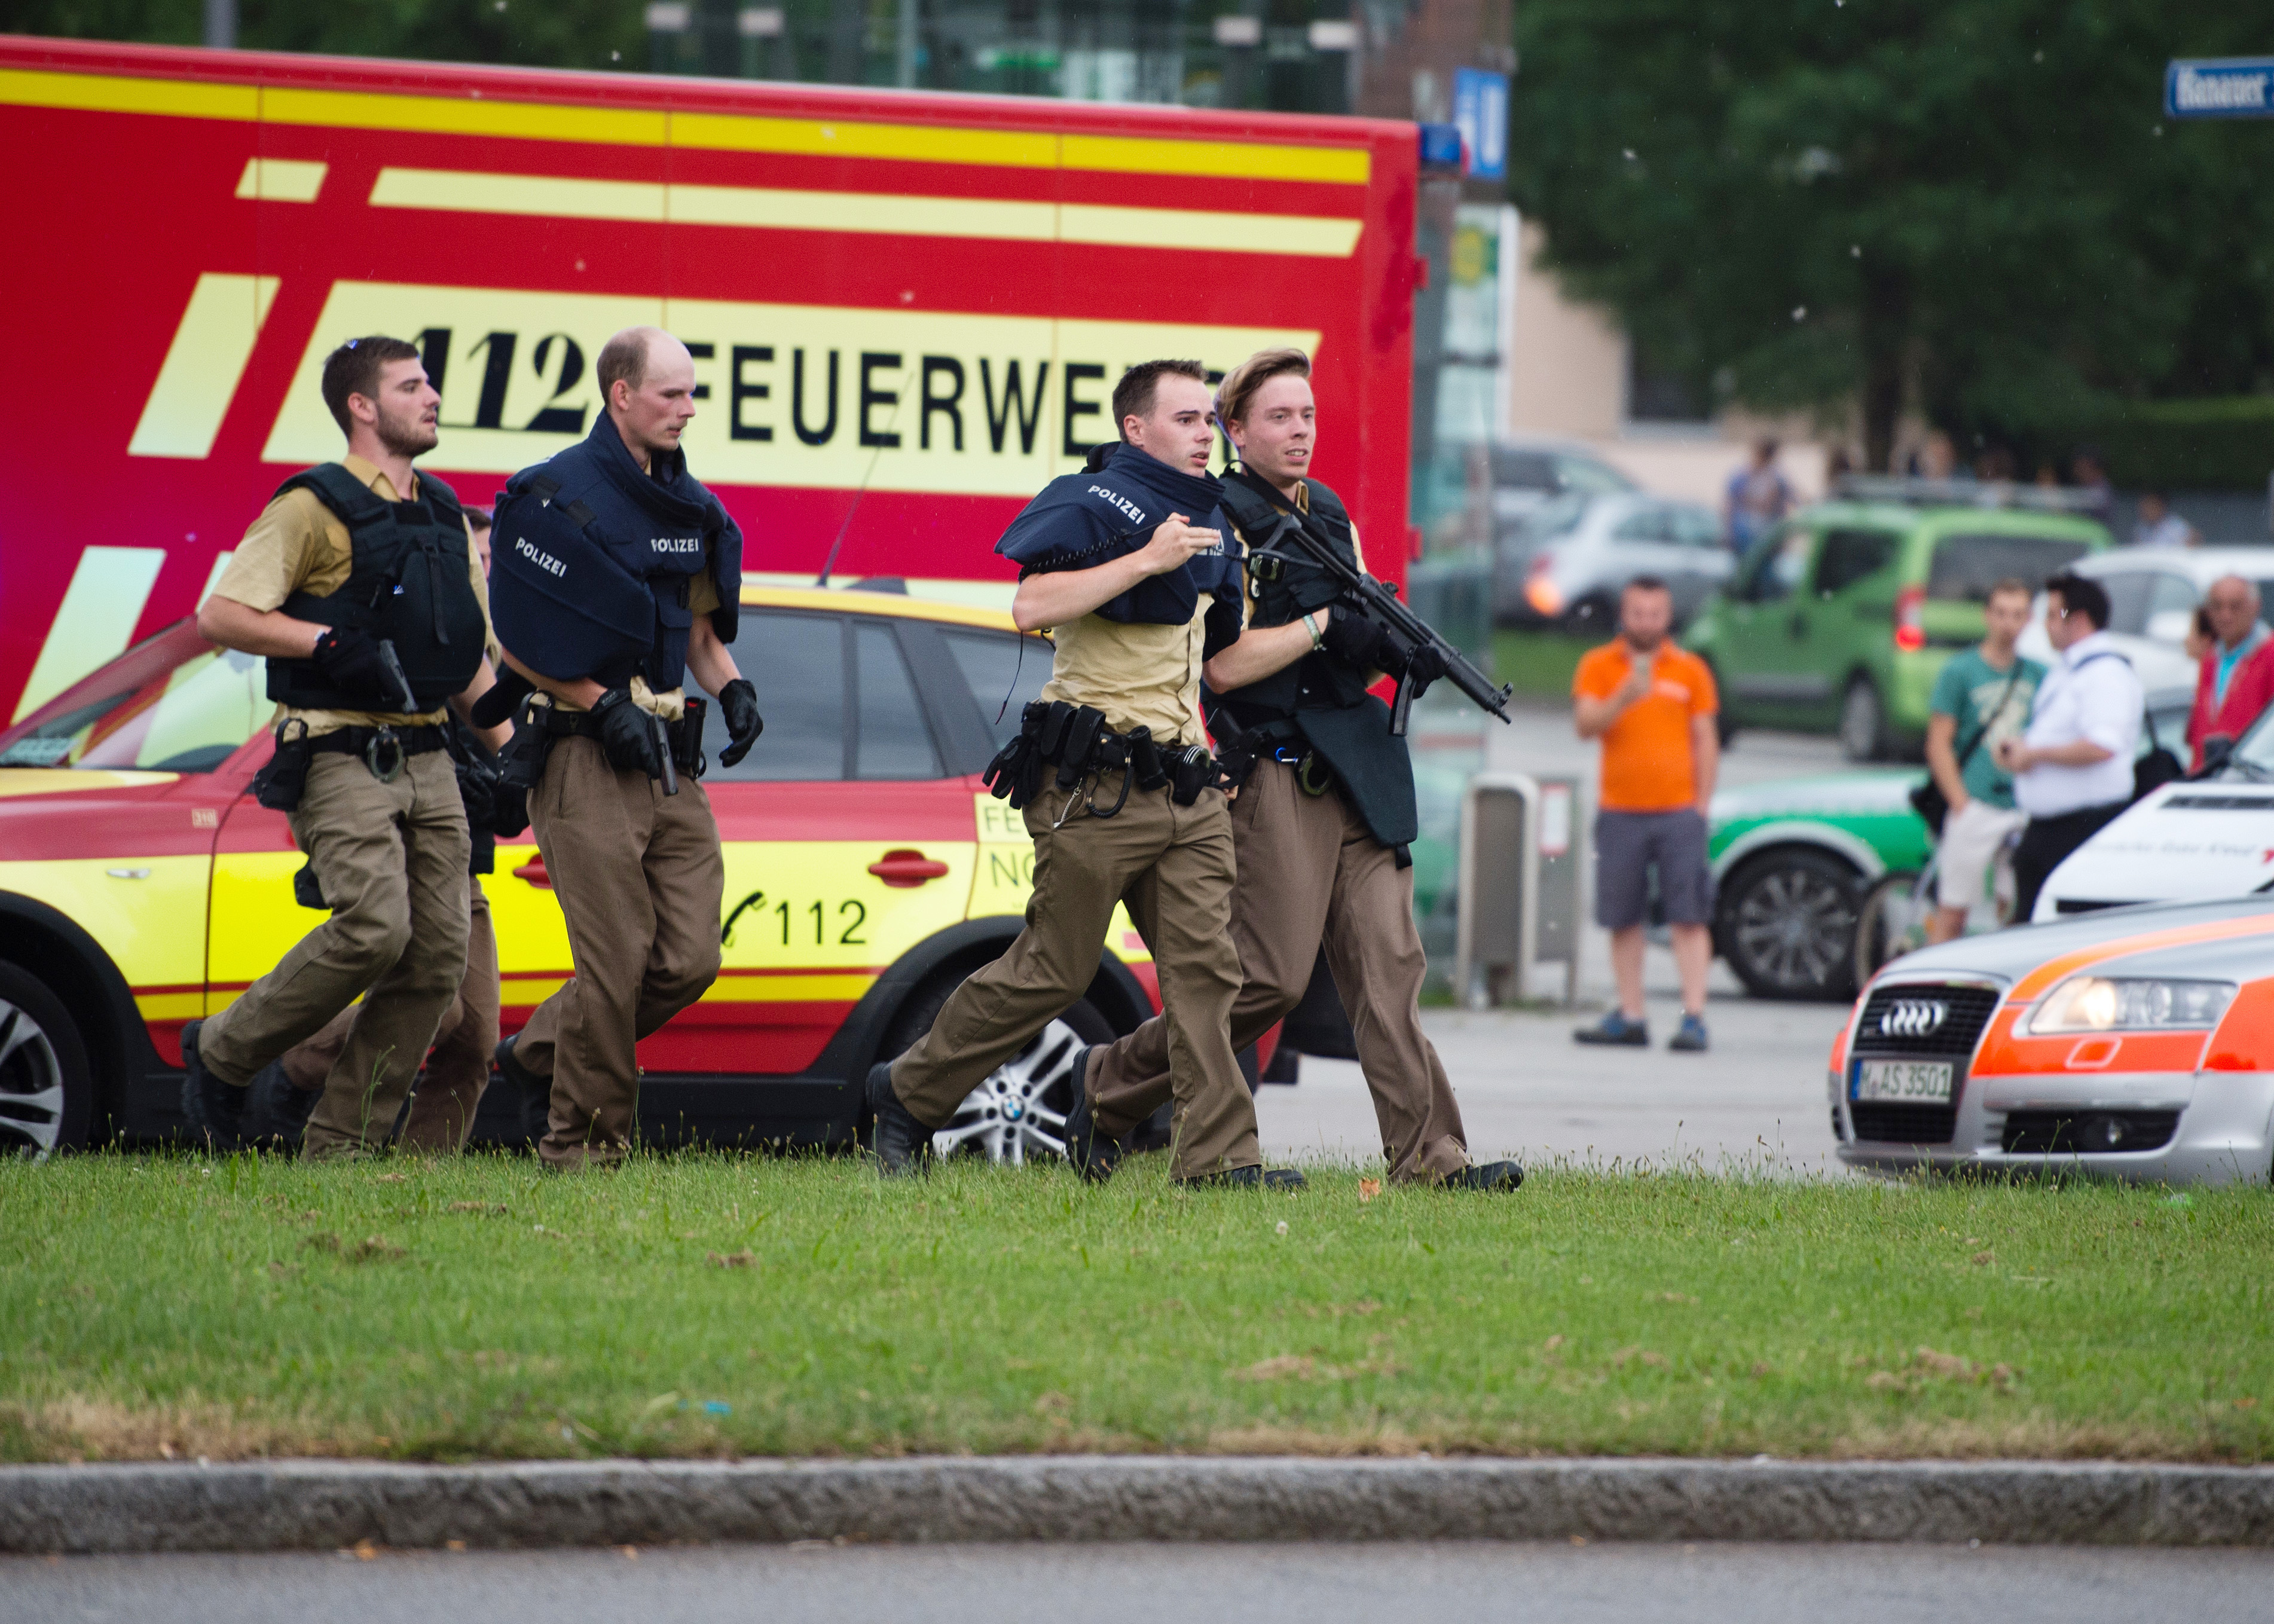 Γερμανία: Εννέα νεκροί ο απολογισμός της επίθεσης στο Μόναχο – Ο  18χρονος γερμανοϊρανός δράστης αυτοκτόνησε